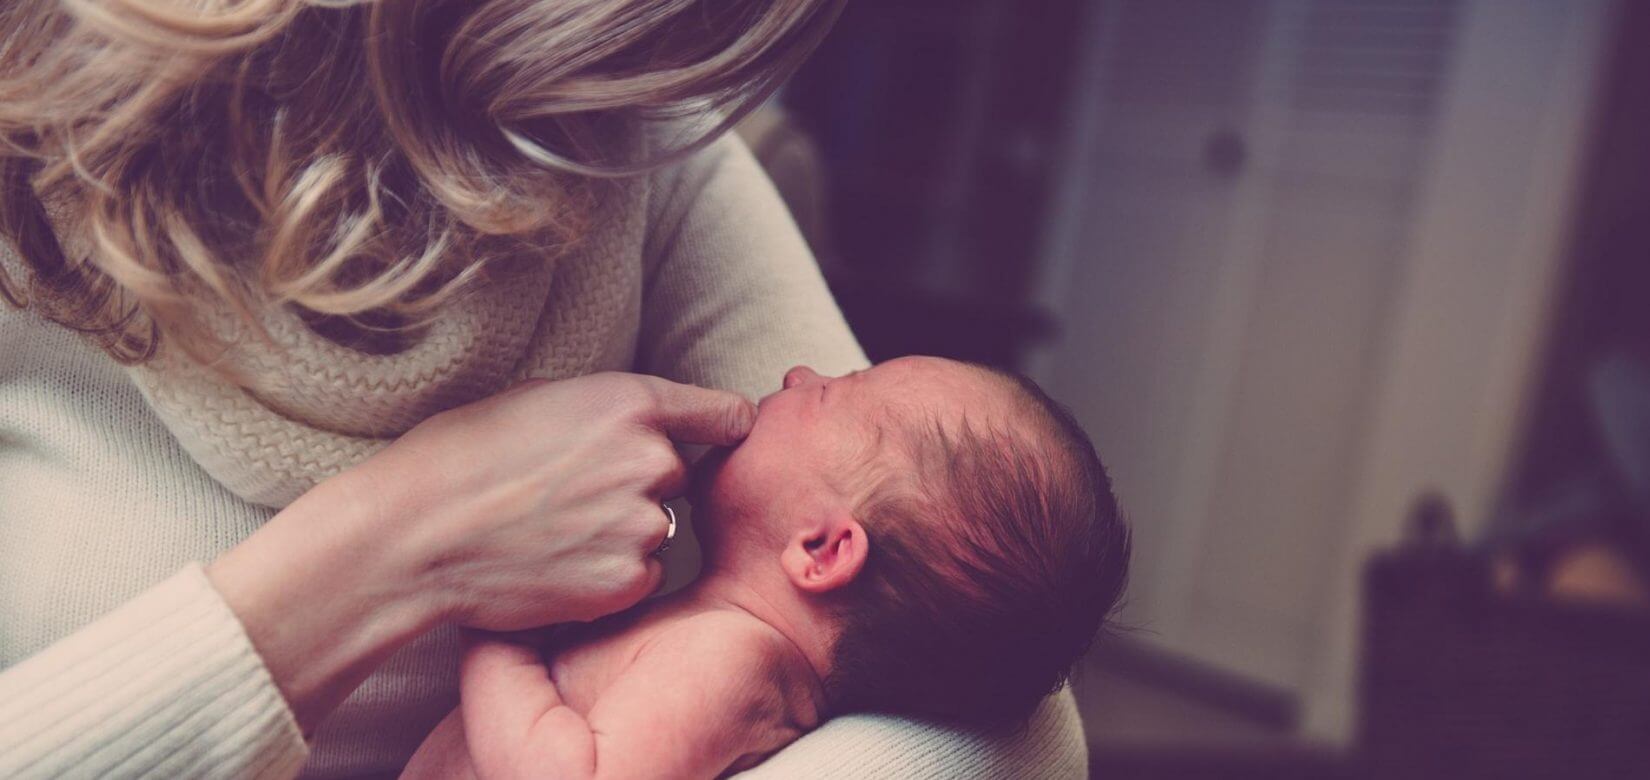 «Η ζωή μου με ένα νεογέννητο και τα συναισθήματα που με κατέκλυσαν μετά τον ερχομό του μωρού μου».